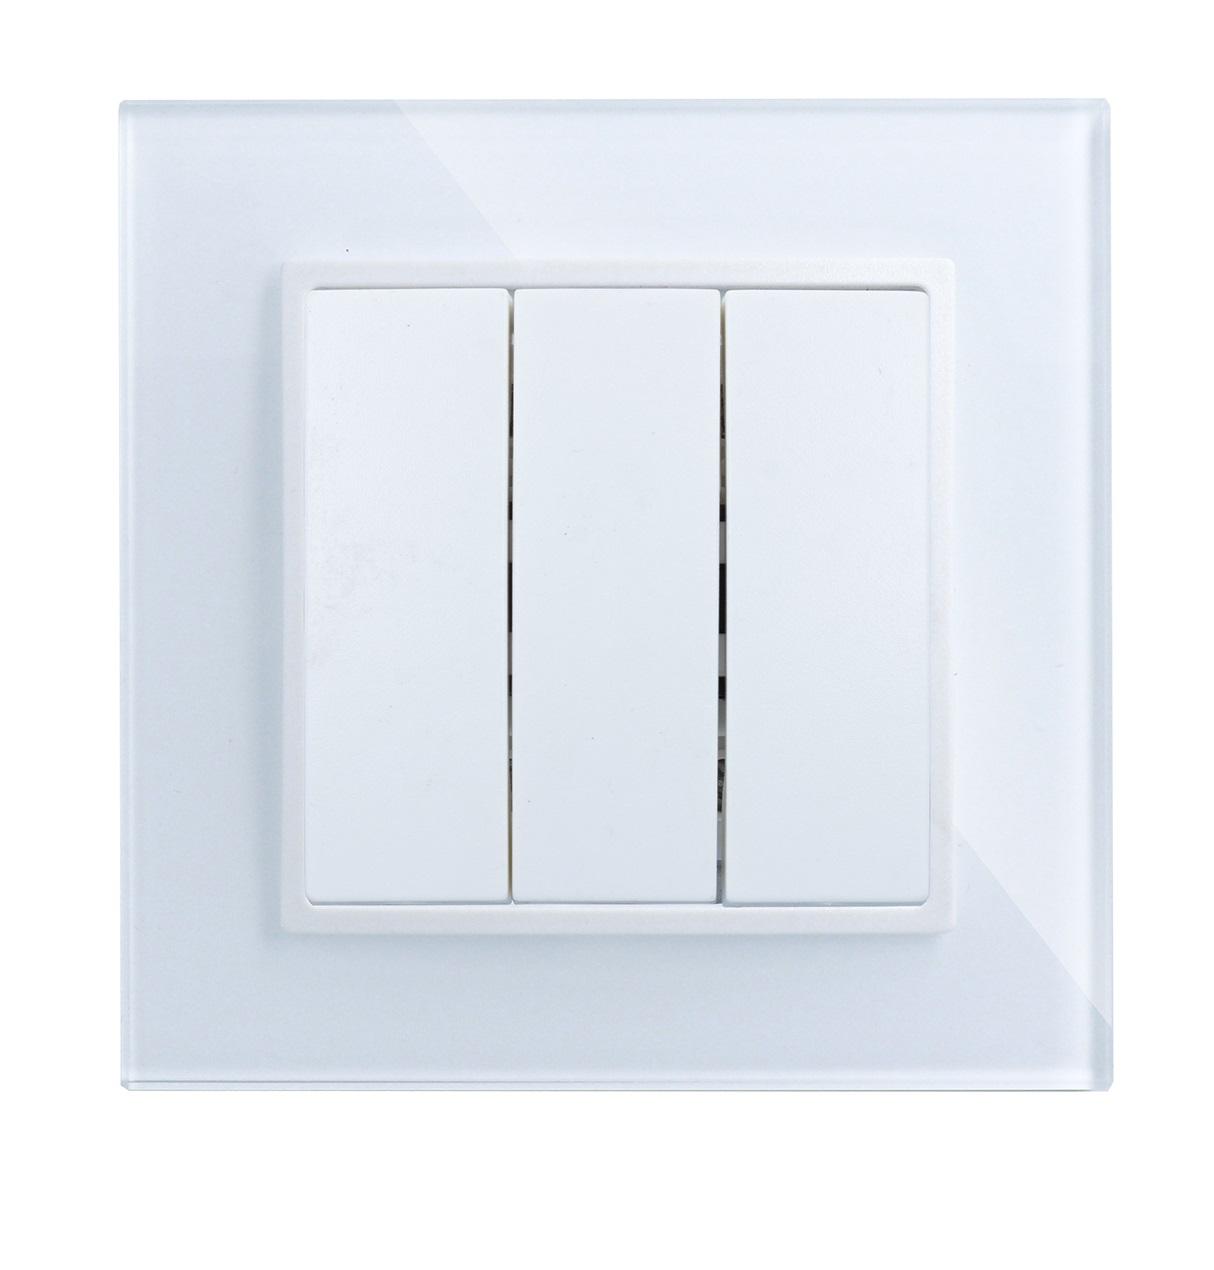 LINA Lichtschalter Wandschalter Schalter Wippe VDE für UP weiß inkls. Glasrahmen